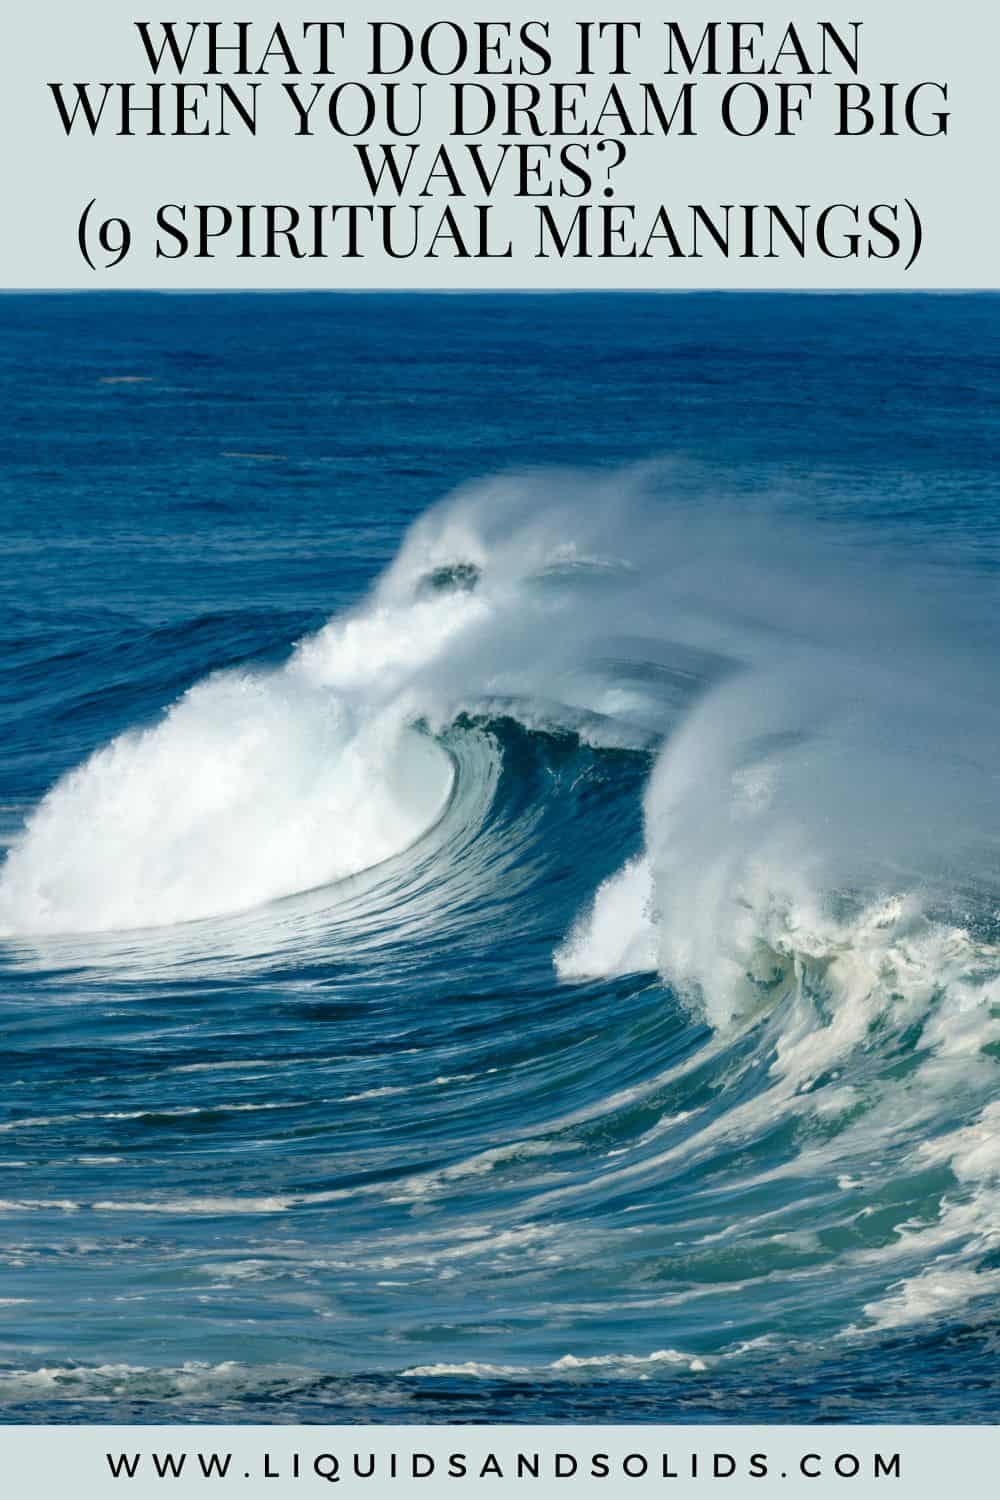  Ce que signifie rêver de grandes vagues (9 significations spirituelles)